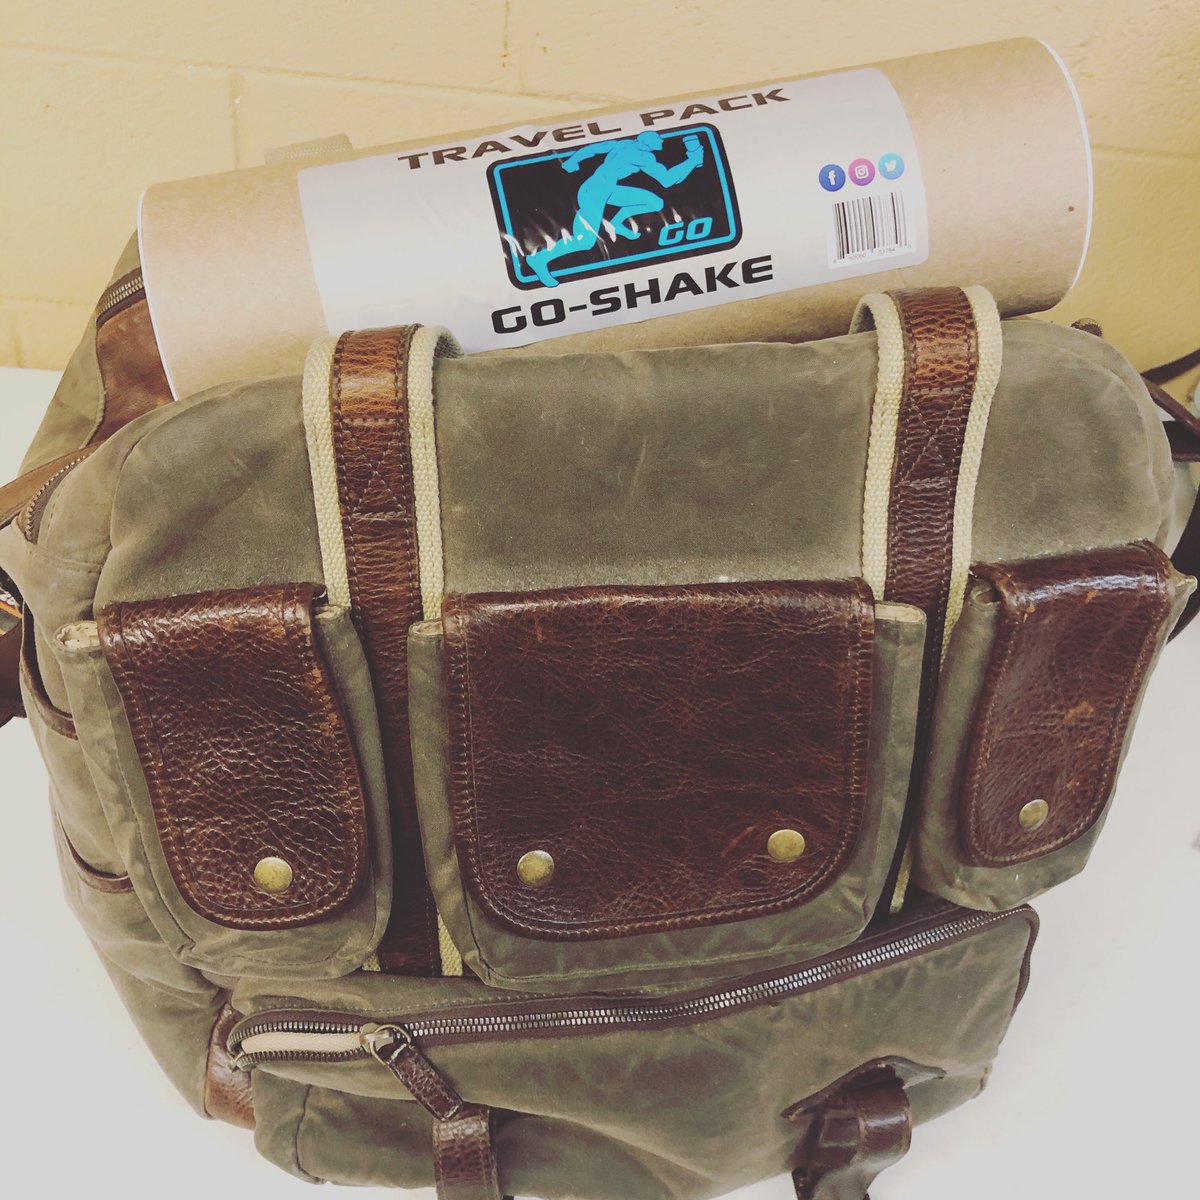 Travel pack is a must for any trip! #crushproof #easytopack #youdonthavetoworry #onthego #businesstrip #vacation #weekendgetaway #siesta #weekendtrip #suitcase #suitcasetravels #dufflebag #overnightbag #endlesspossibilities